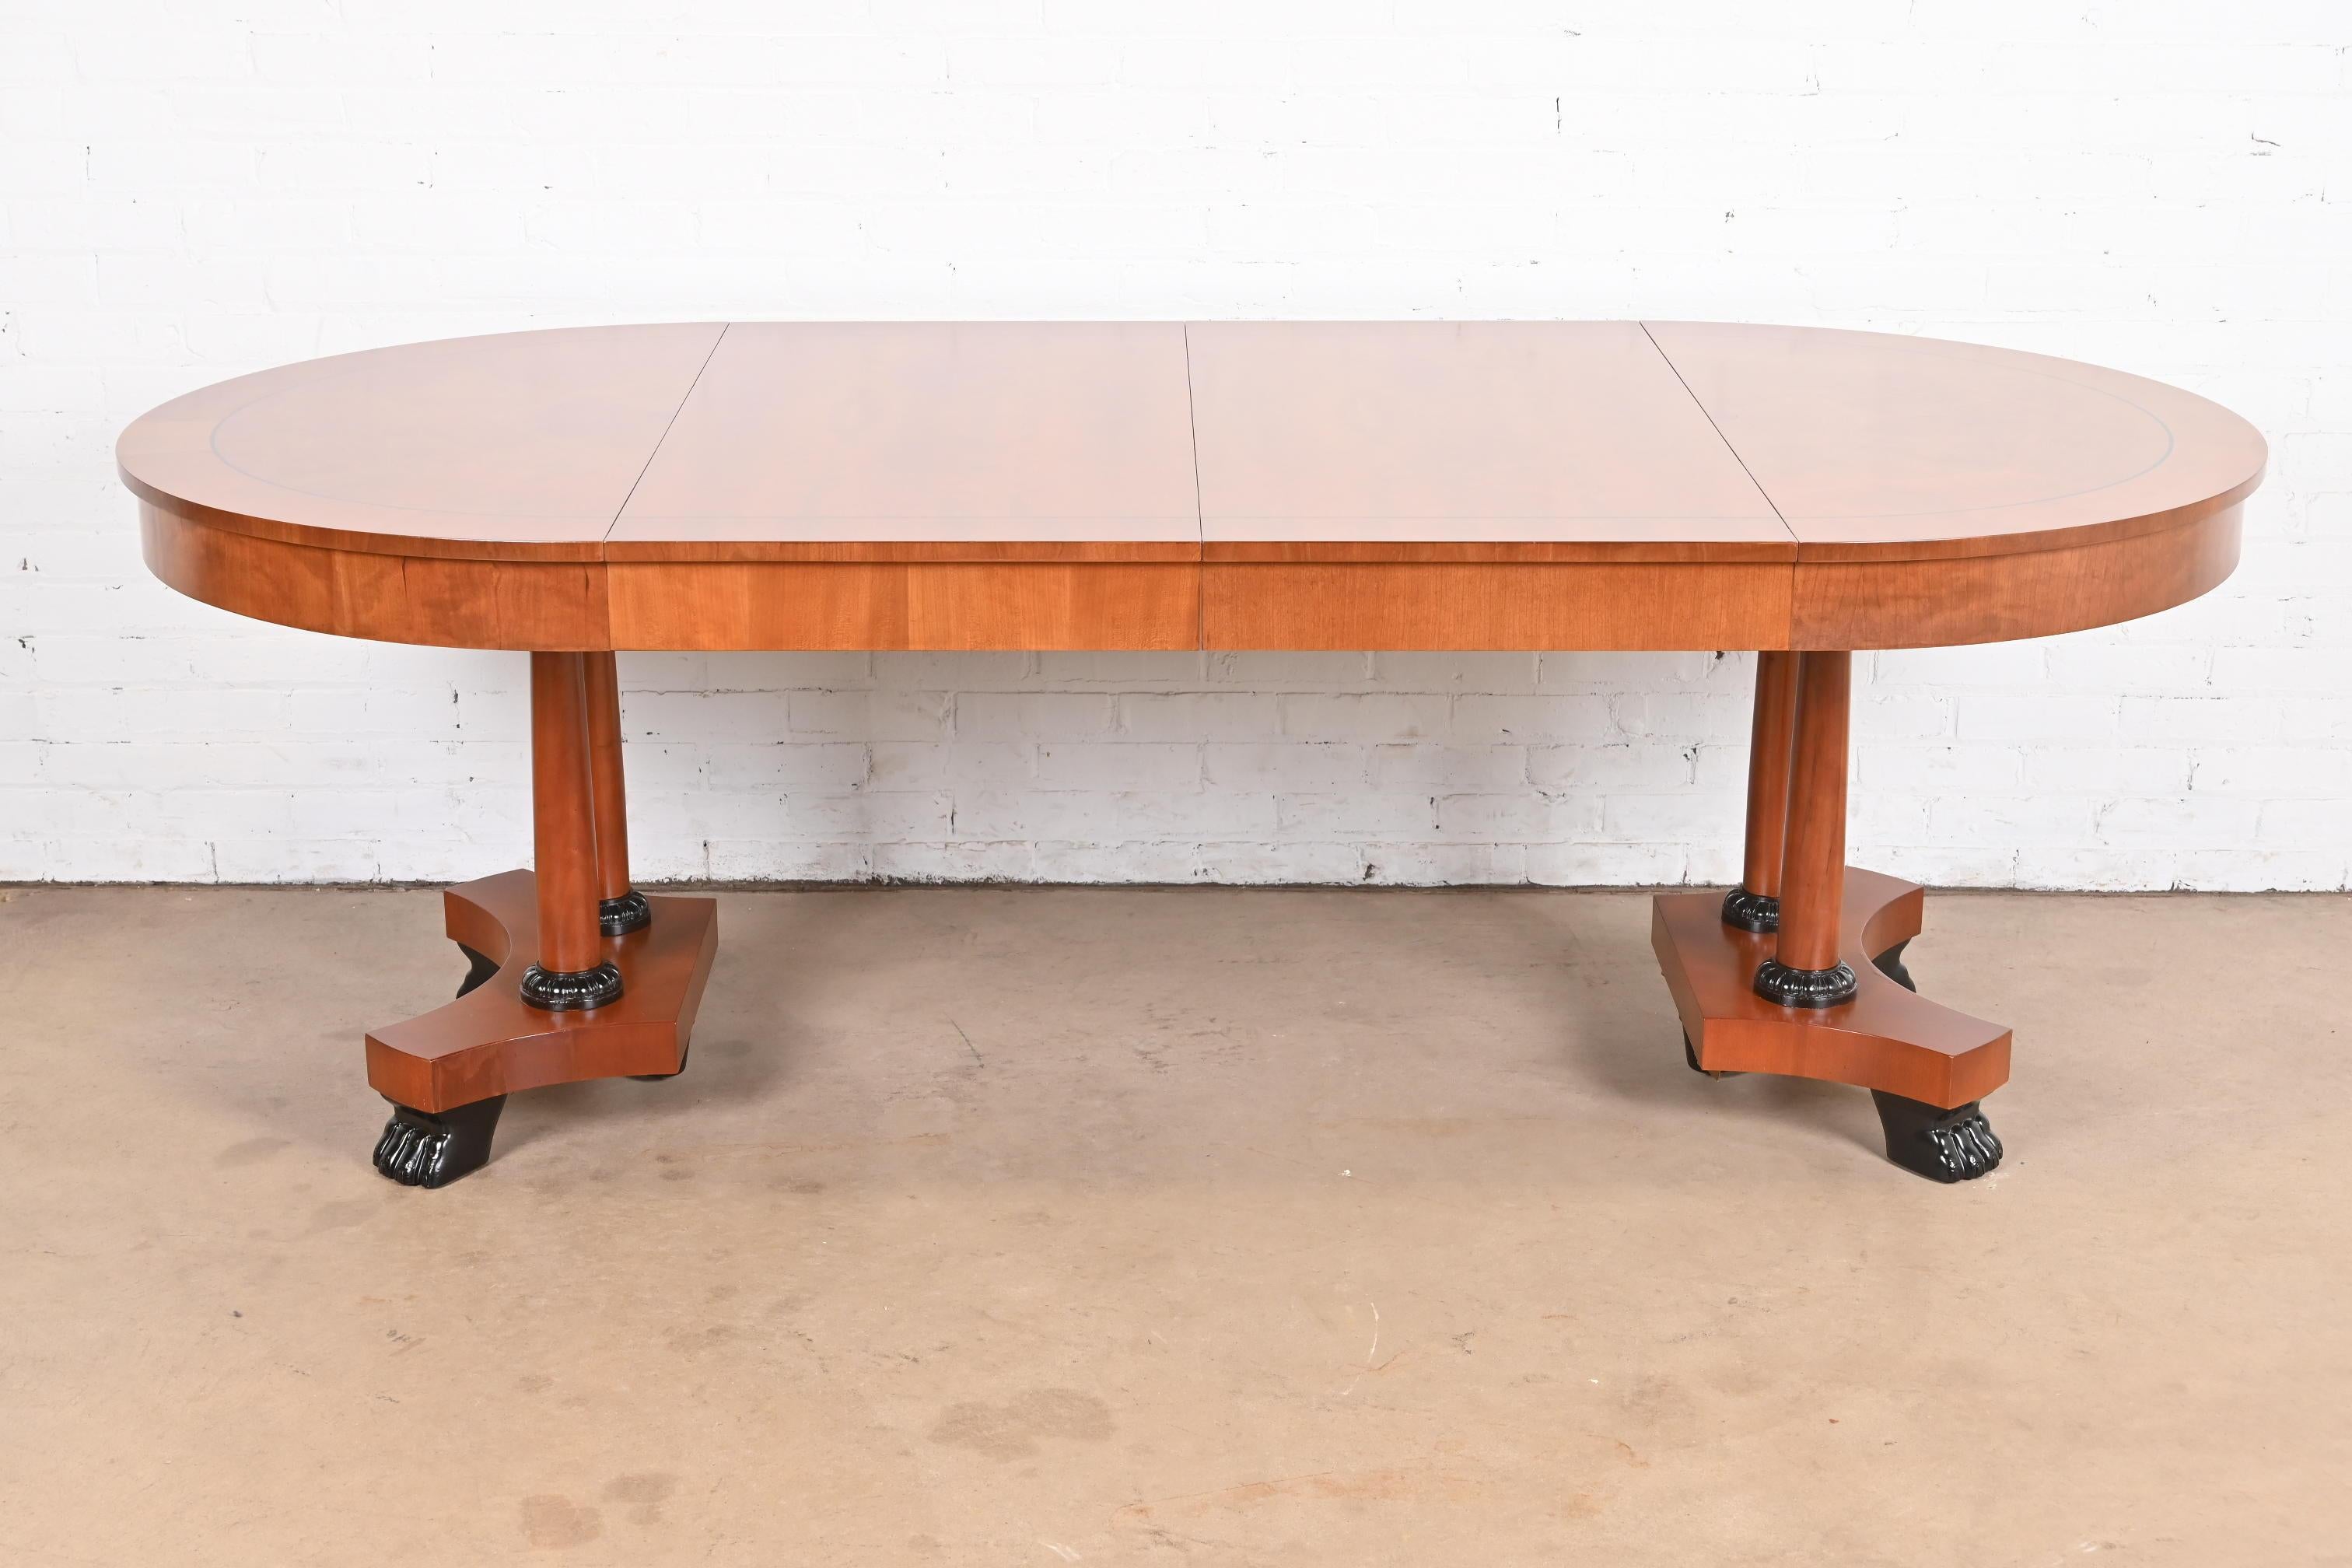 Magnifique table de salle à manger à rallonge de style néoclassique ou empire

Par Baker Furniture, 